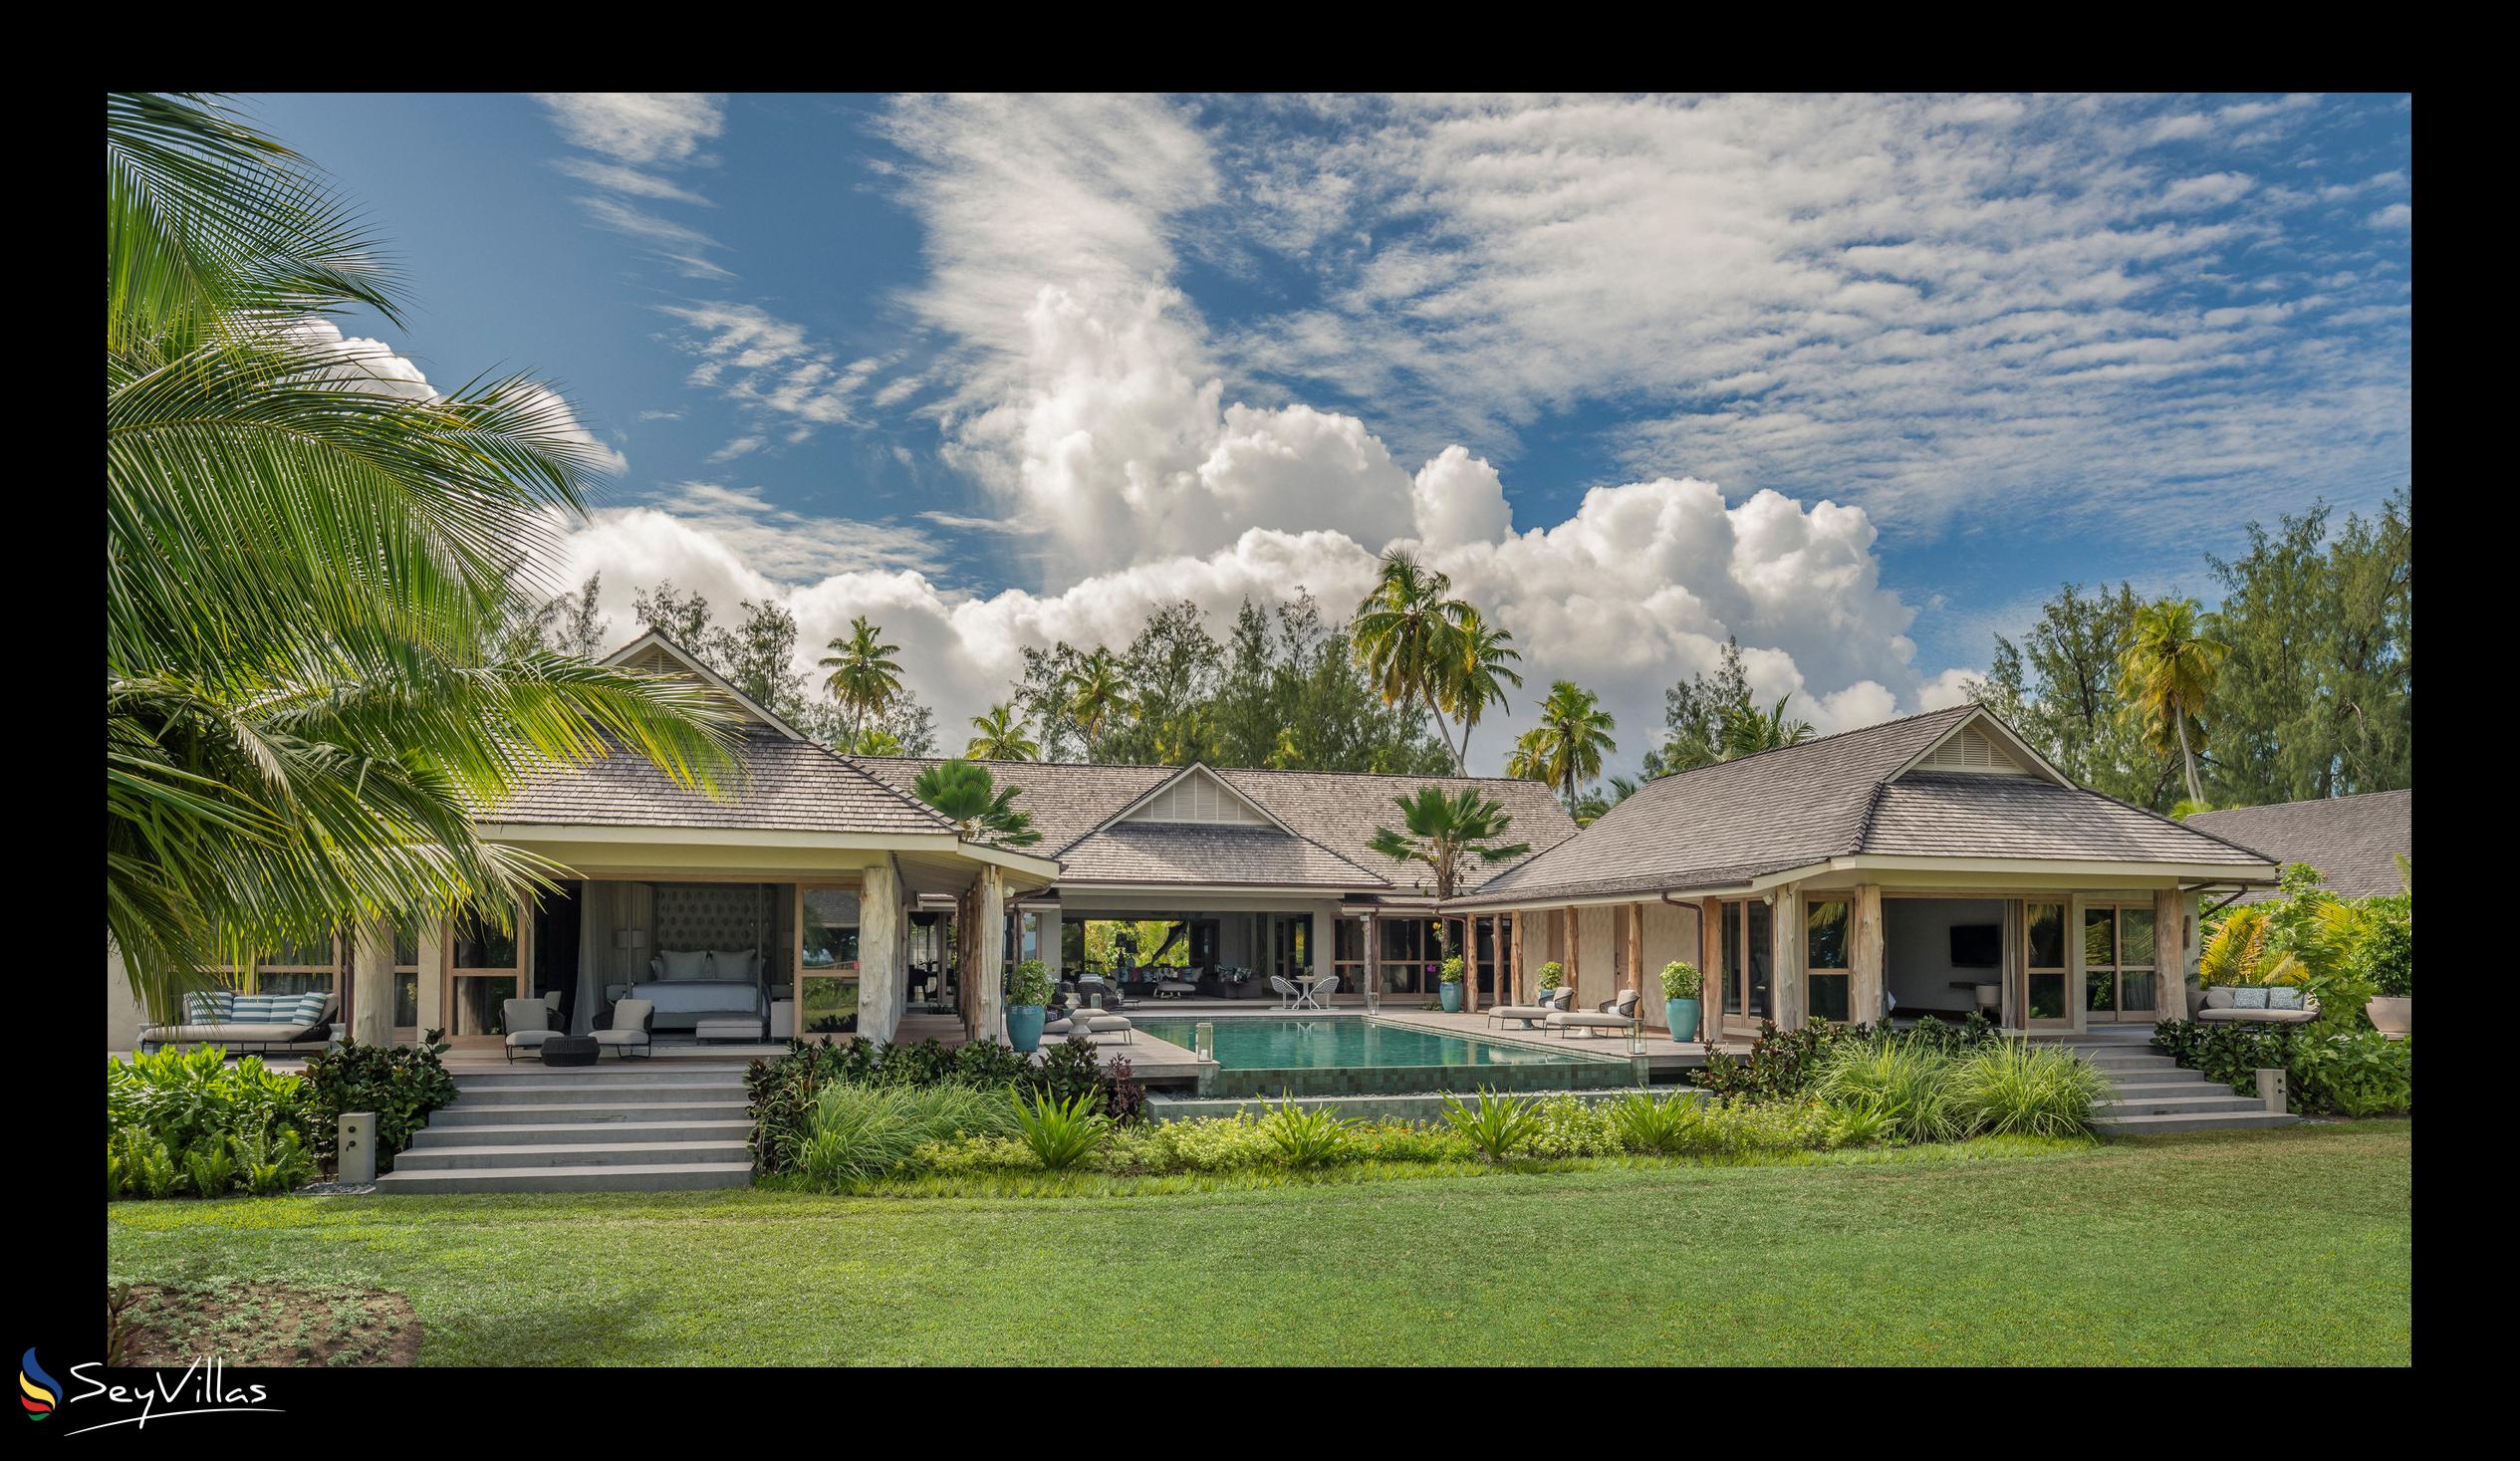 Foto 126: Four Seasons Resort Desroches Island - 7-Schlafzimmer Präsidenten-Villa - Desroches Island (Seychellen)